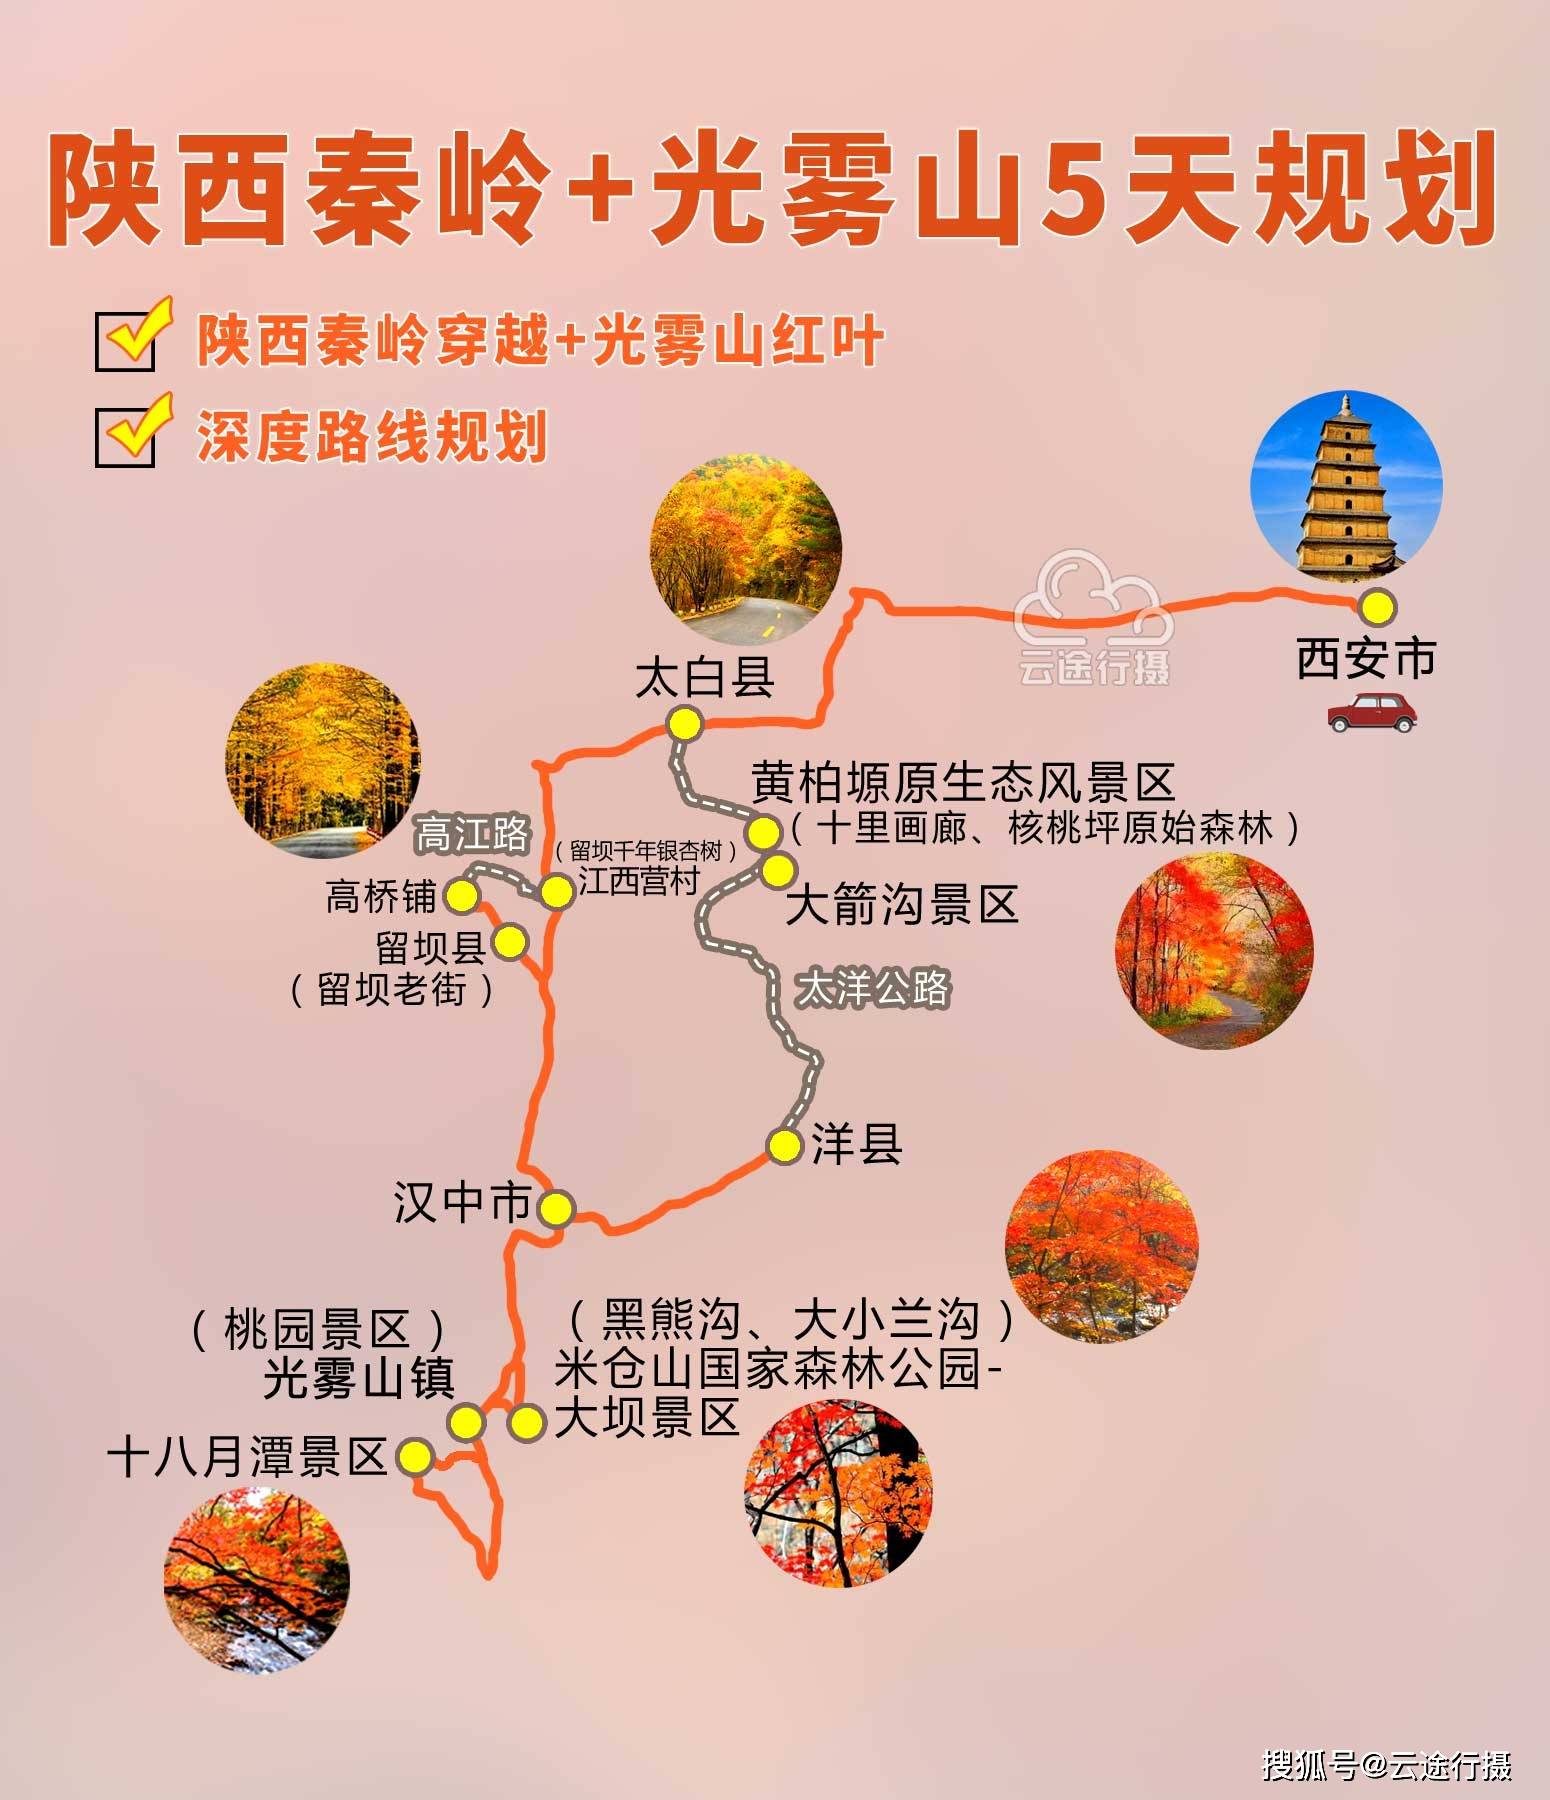 千年古银杏树,陕西秦岭穿越 光雾山红叶自驾游自由行深度线路规划